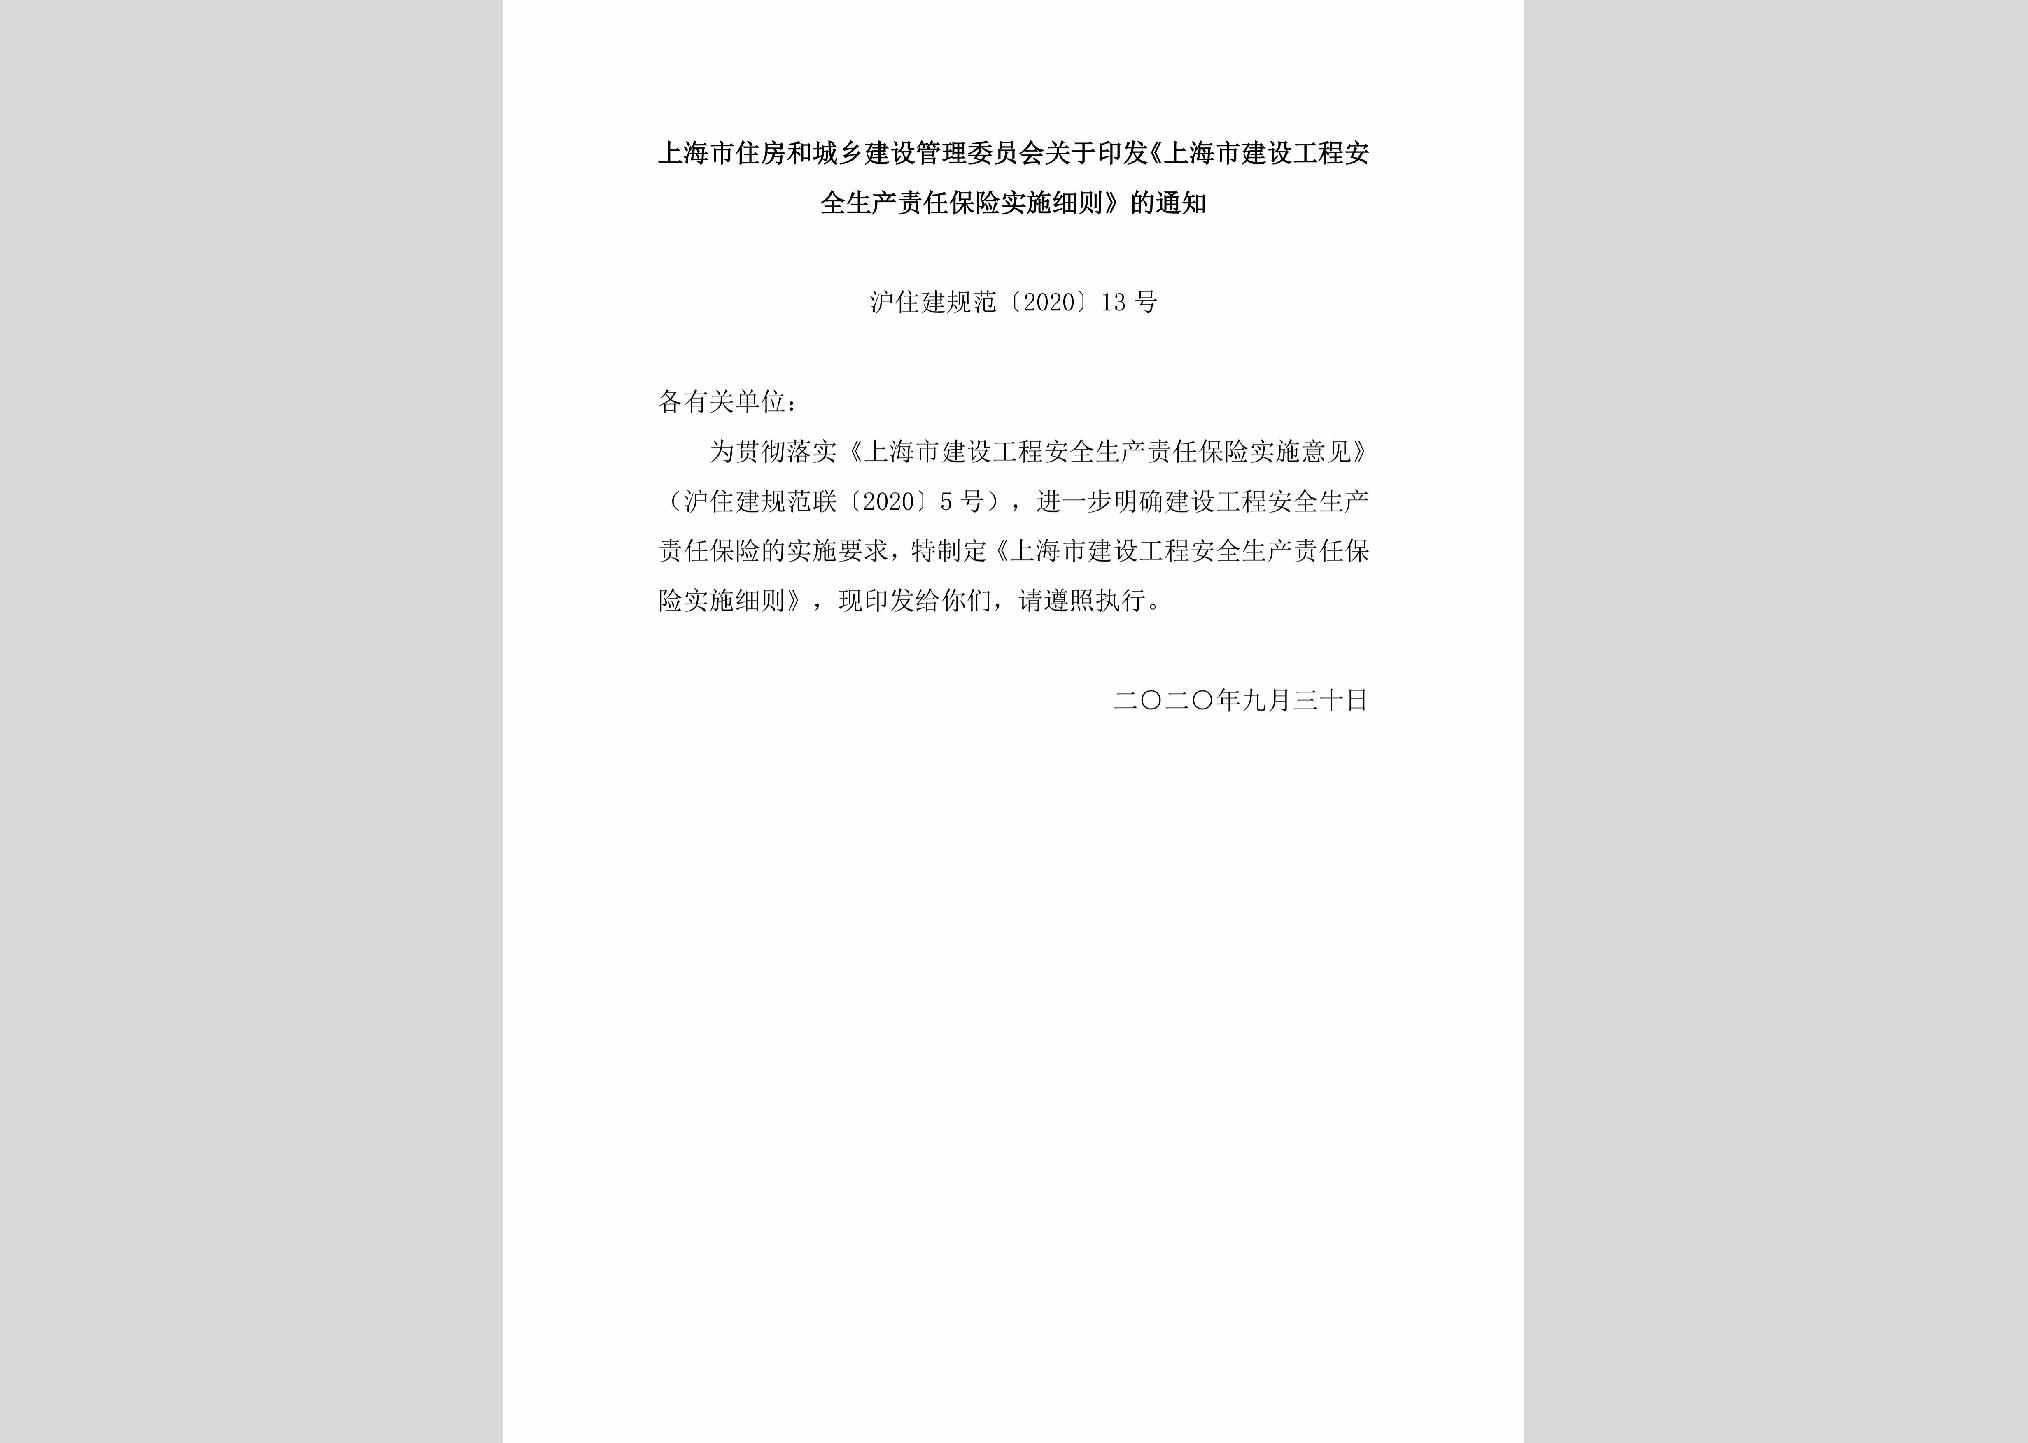 沪住建规范[2020]13号：上海市住房和城乡建设管理委员会关于印发《上海市建设工程安全生产责任保险实施细则》的通知